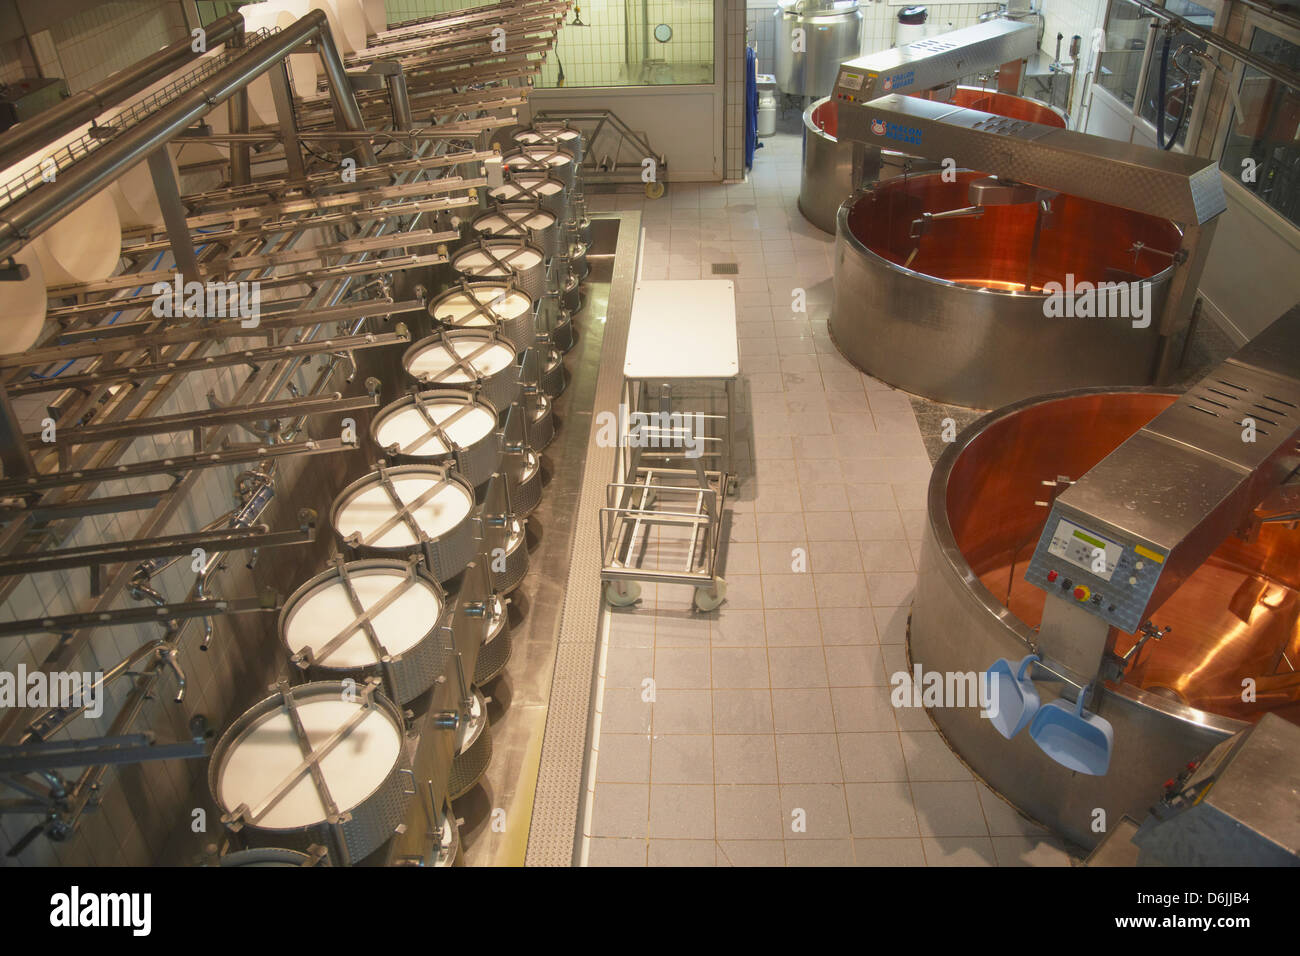 Cheese making equipment inside La Maison du Gruyere, Gruyeres, Fribourg, Switzerland, Europe Stock Photo